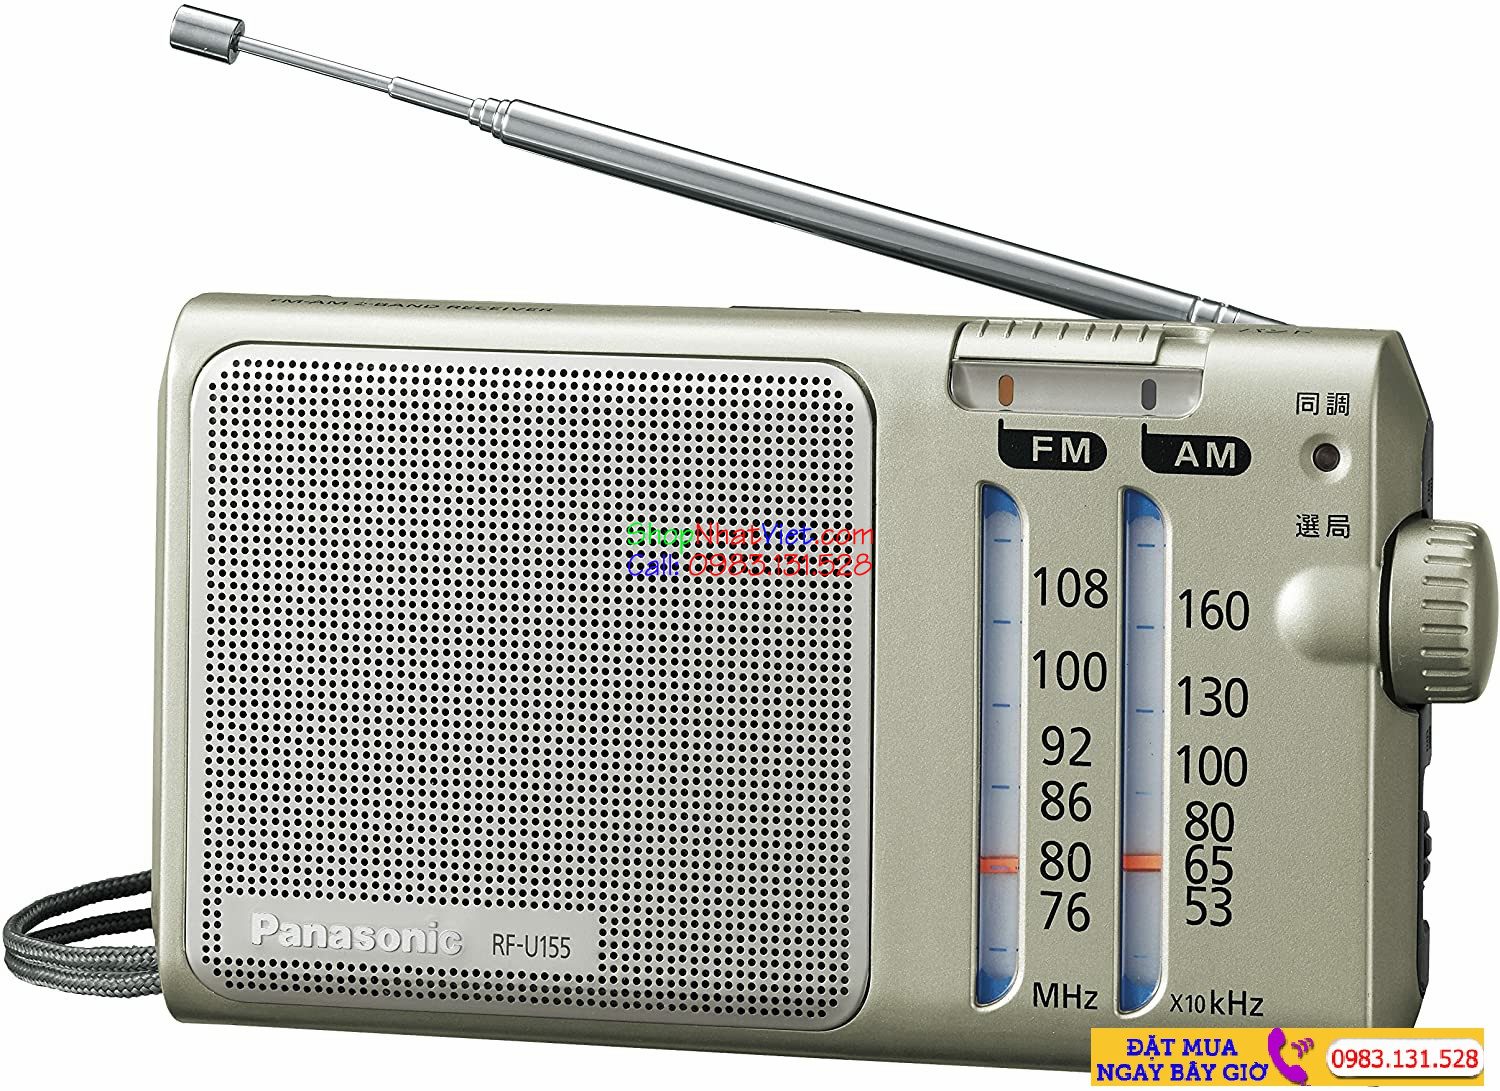 Mua đài Radio Panasonic RF-U155-S ở đâu uy tín, đảm bảo chất lượng, giá tốt